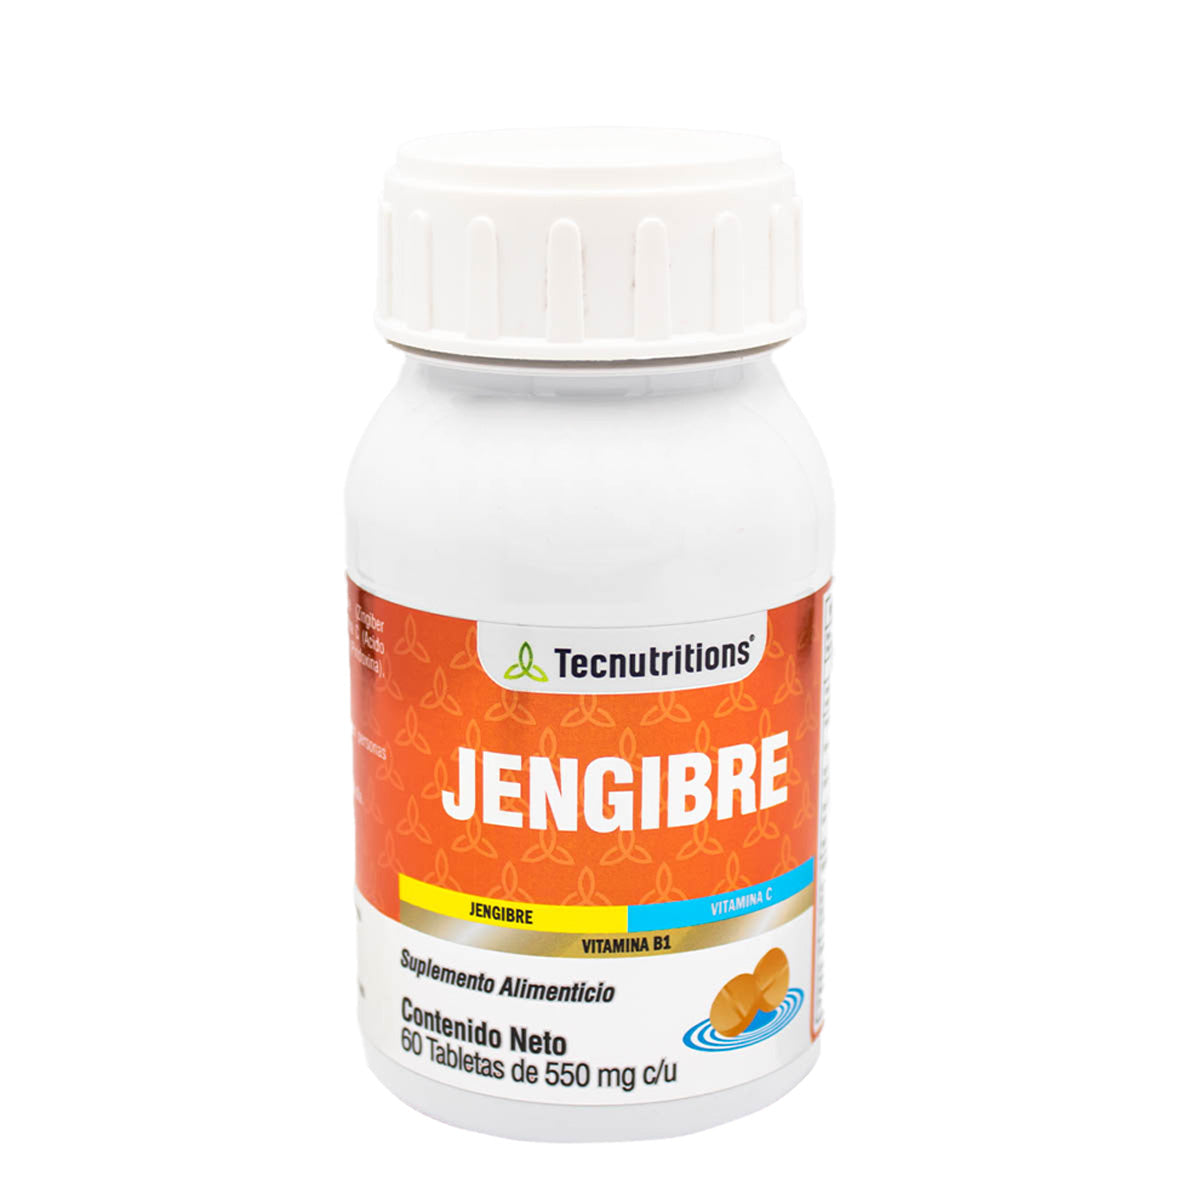 Suplemento alimenticio Jengibre, 60 tabs, con jengibre, vitamina c, sistema inmune